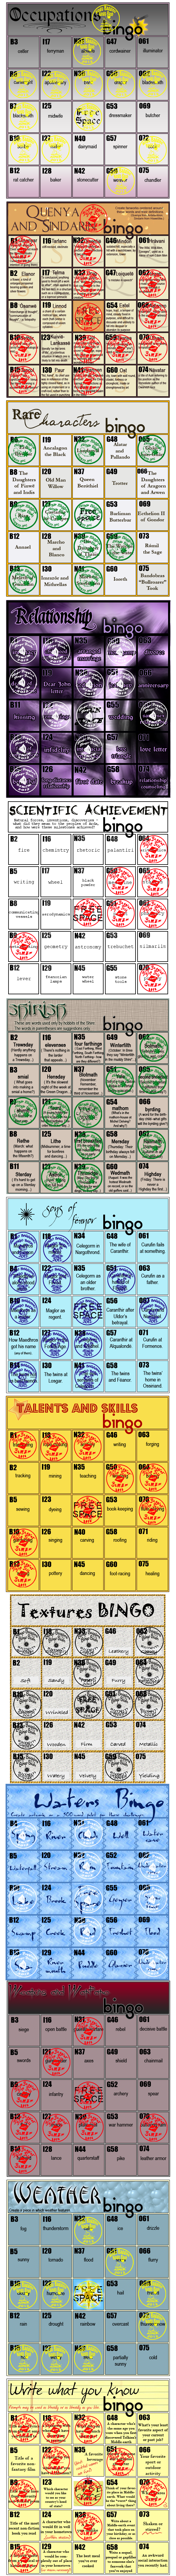 Zhie's Bingo Cards